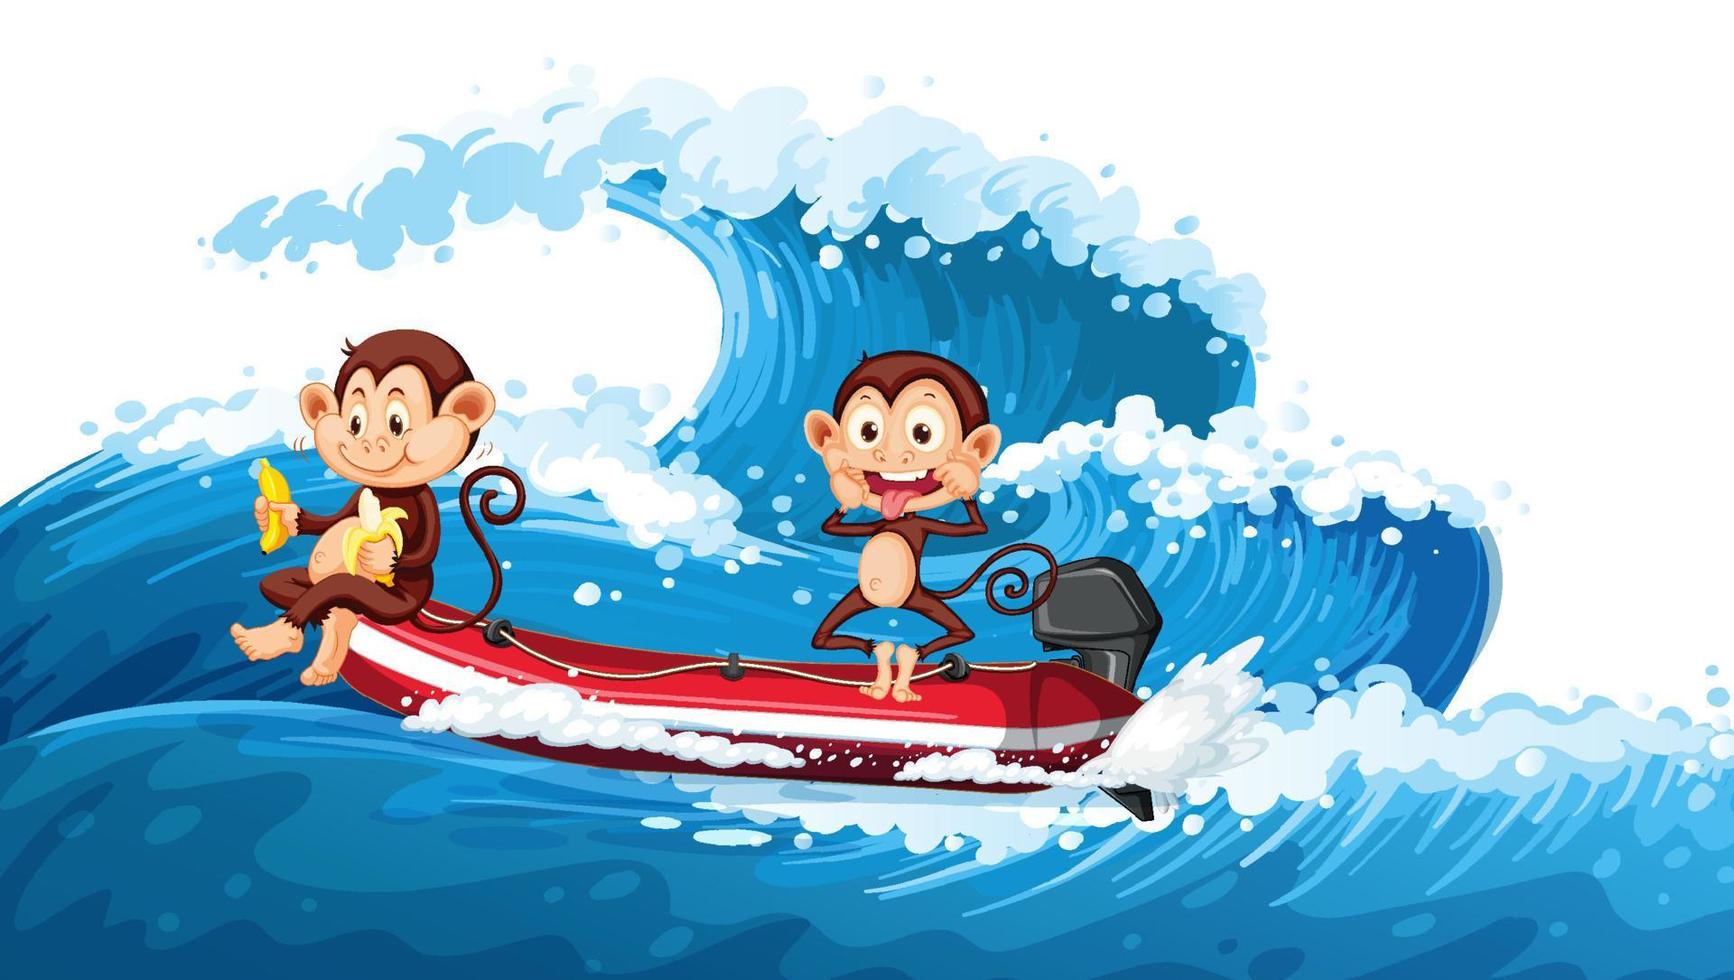 zwei kleine Affen auf einem Boot mit Meereswelle vektor